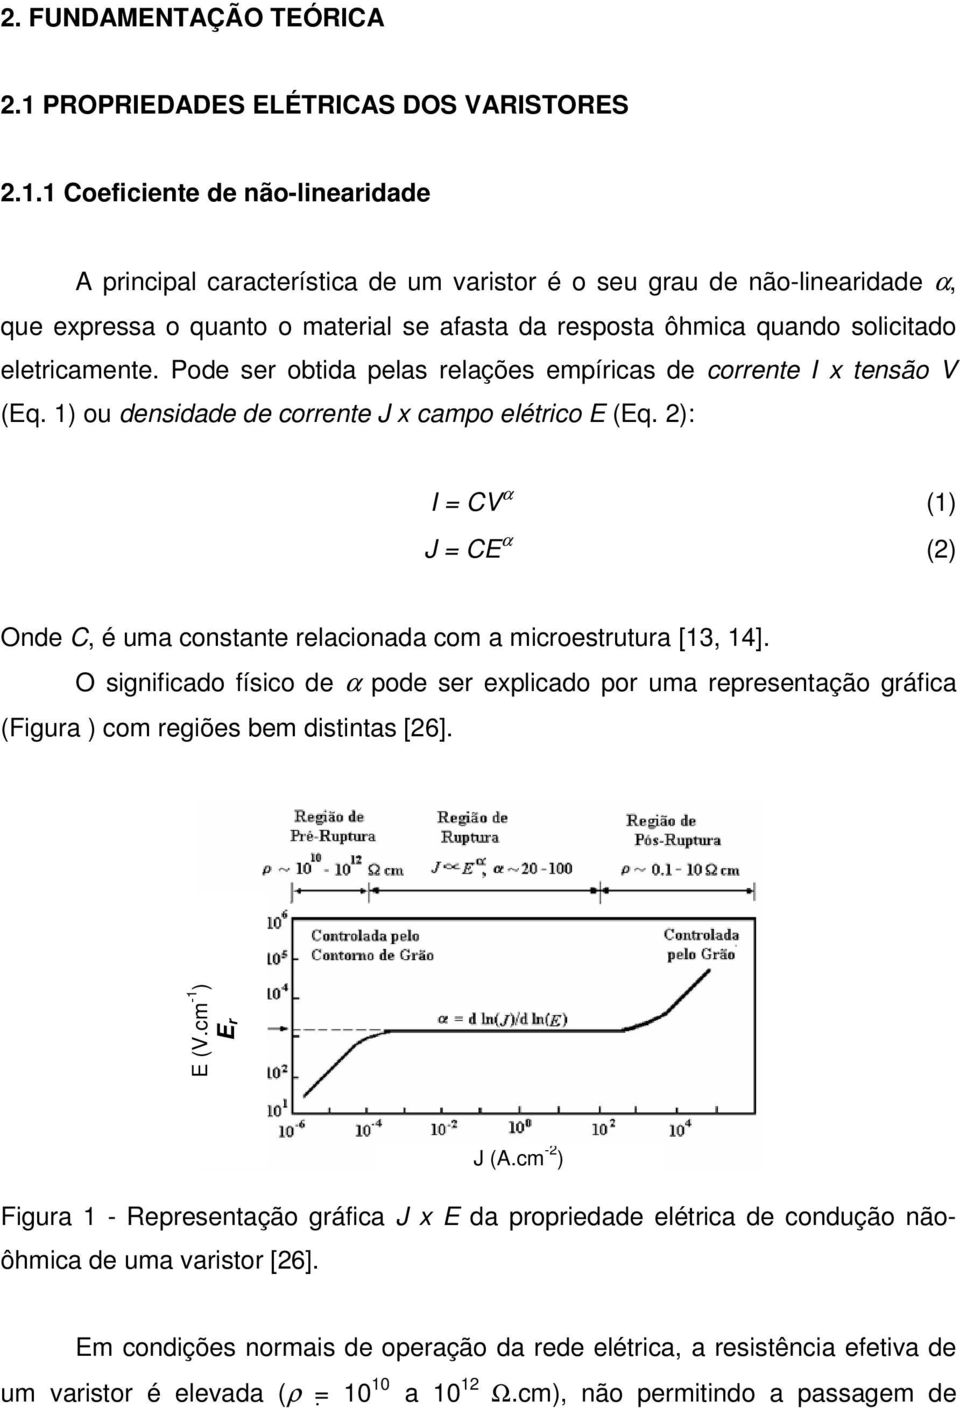 1 Coeficiente de não-linearidade A principal característica de um varistor é o seu grau de não-linearidade α, que expressa o quanto o material se afasta da resposta ôhmica quando solicitado